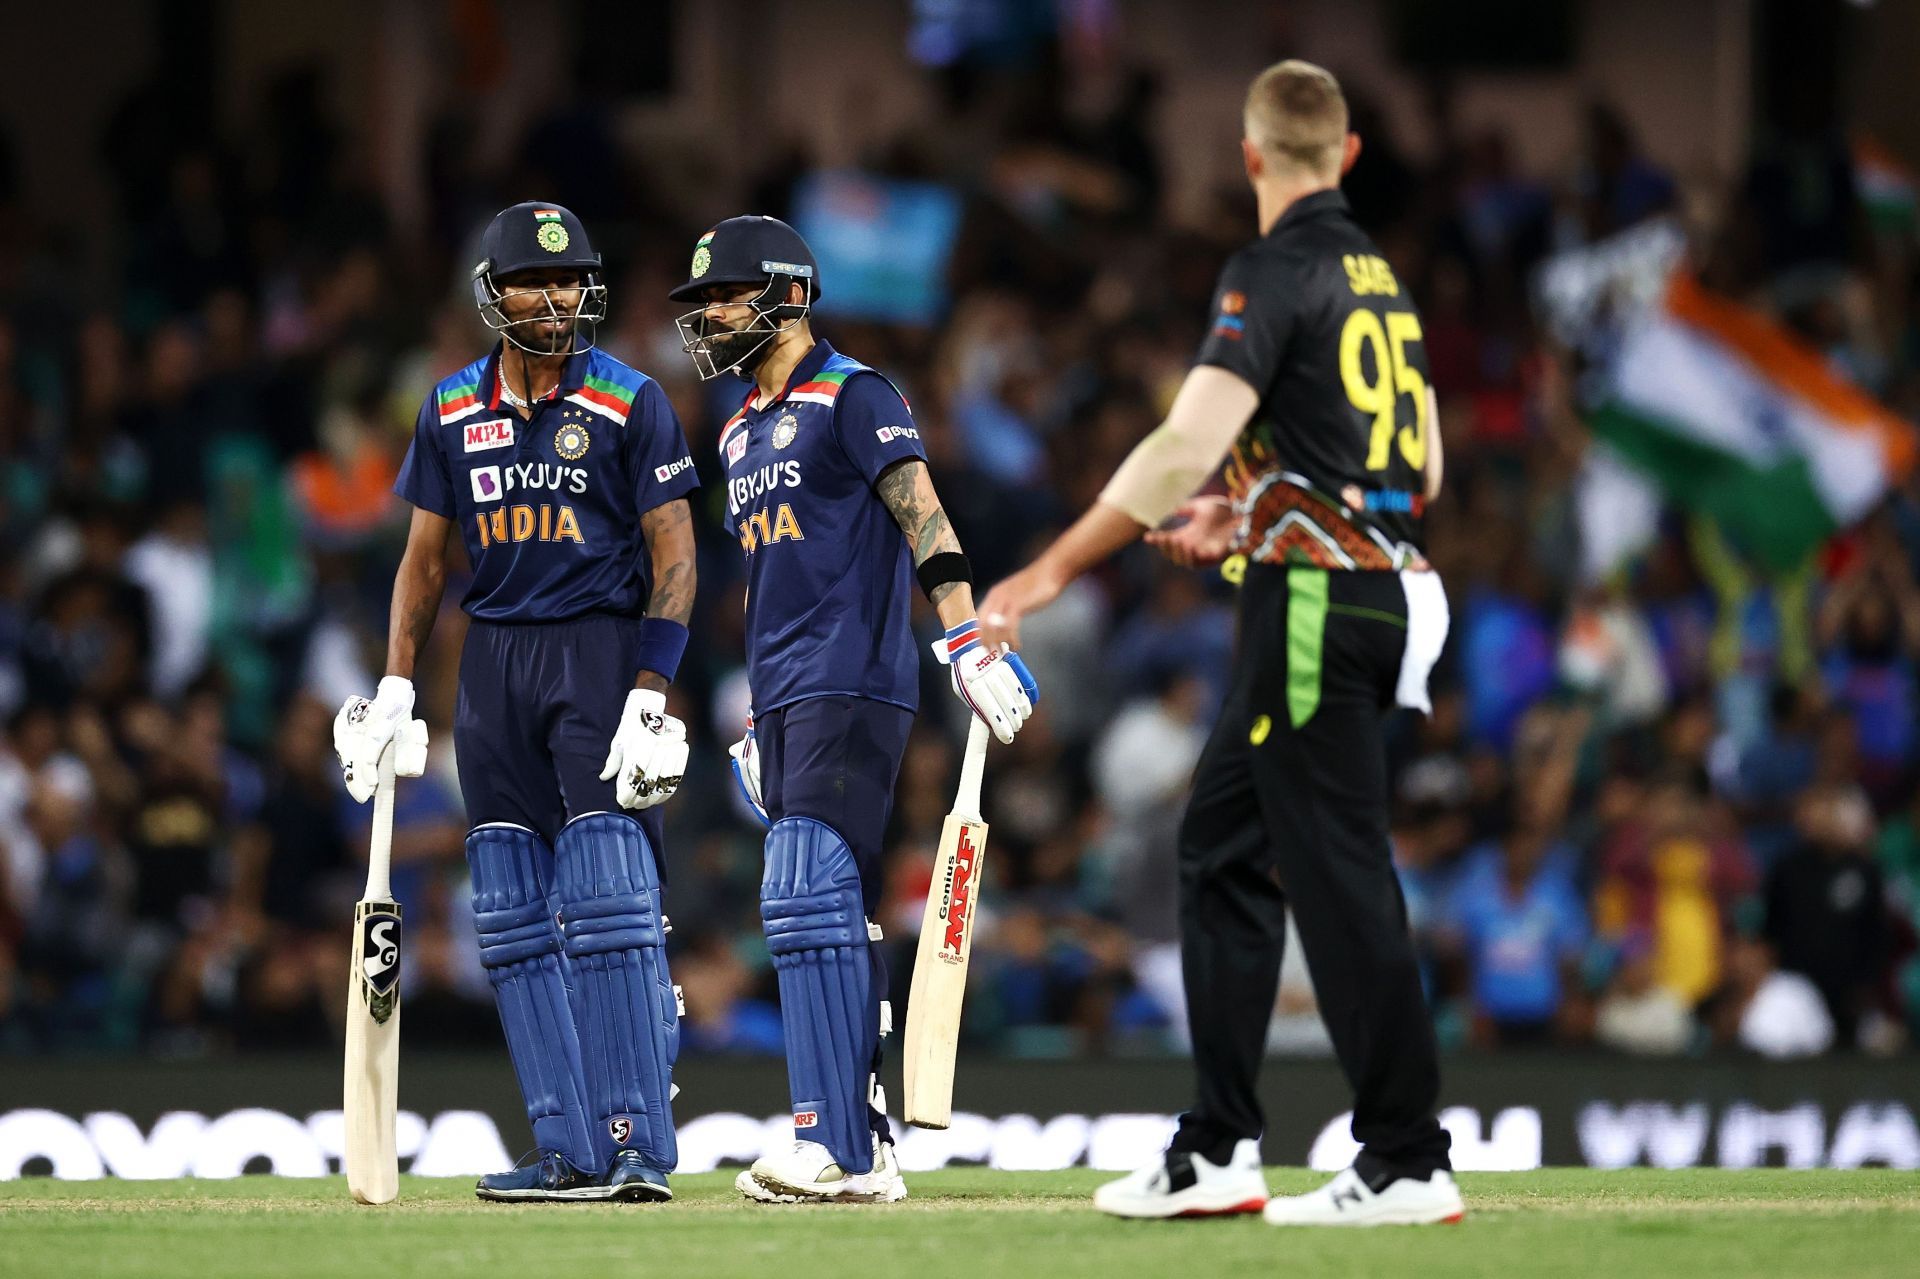 Australia v India - T20 Game 3